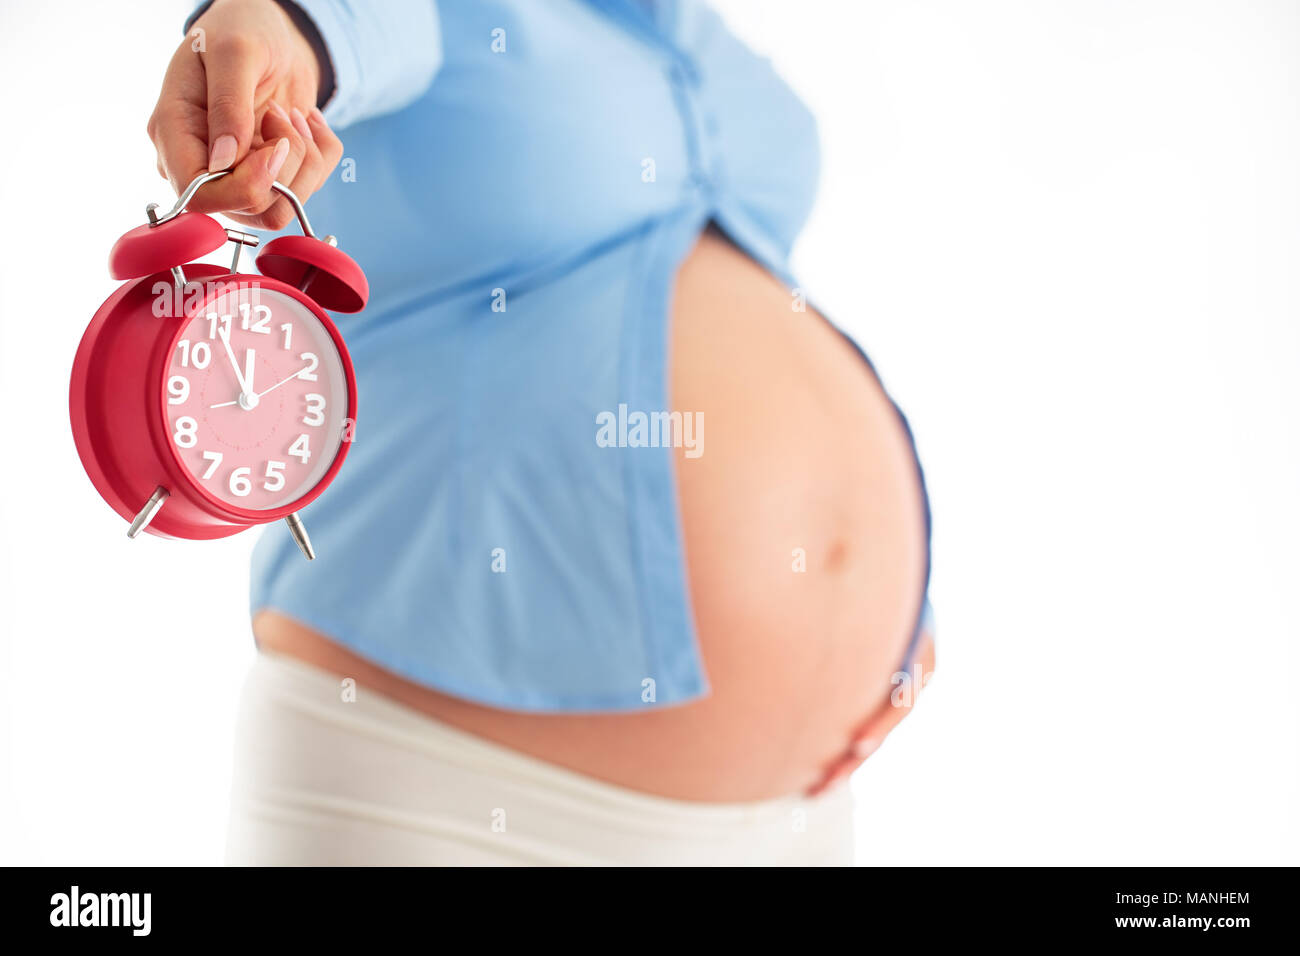 Conta le ore aspettando la nascita del bambino. Concetto di maternità. Donna incinta tenendo sveglia, studio shot. Foto Stock